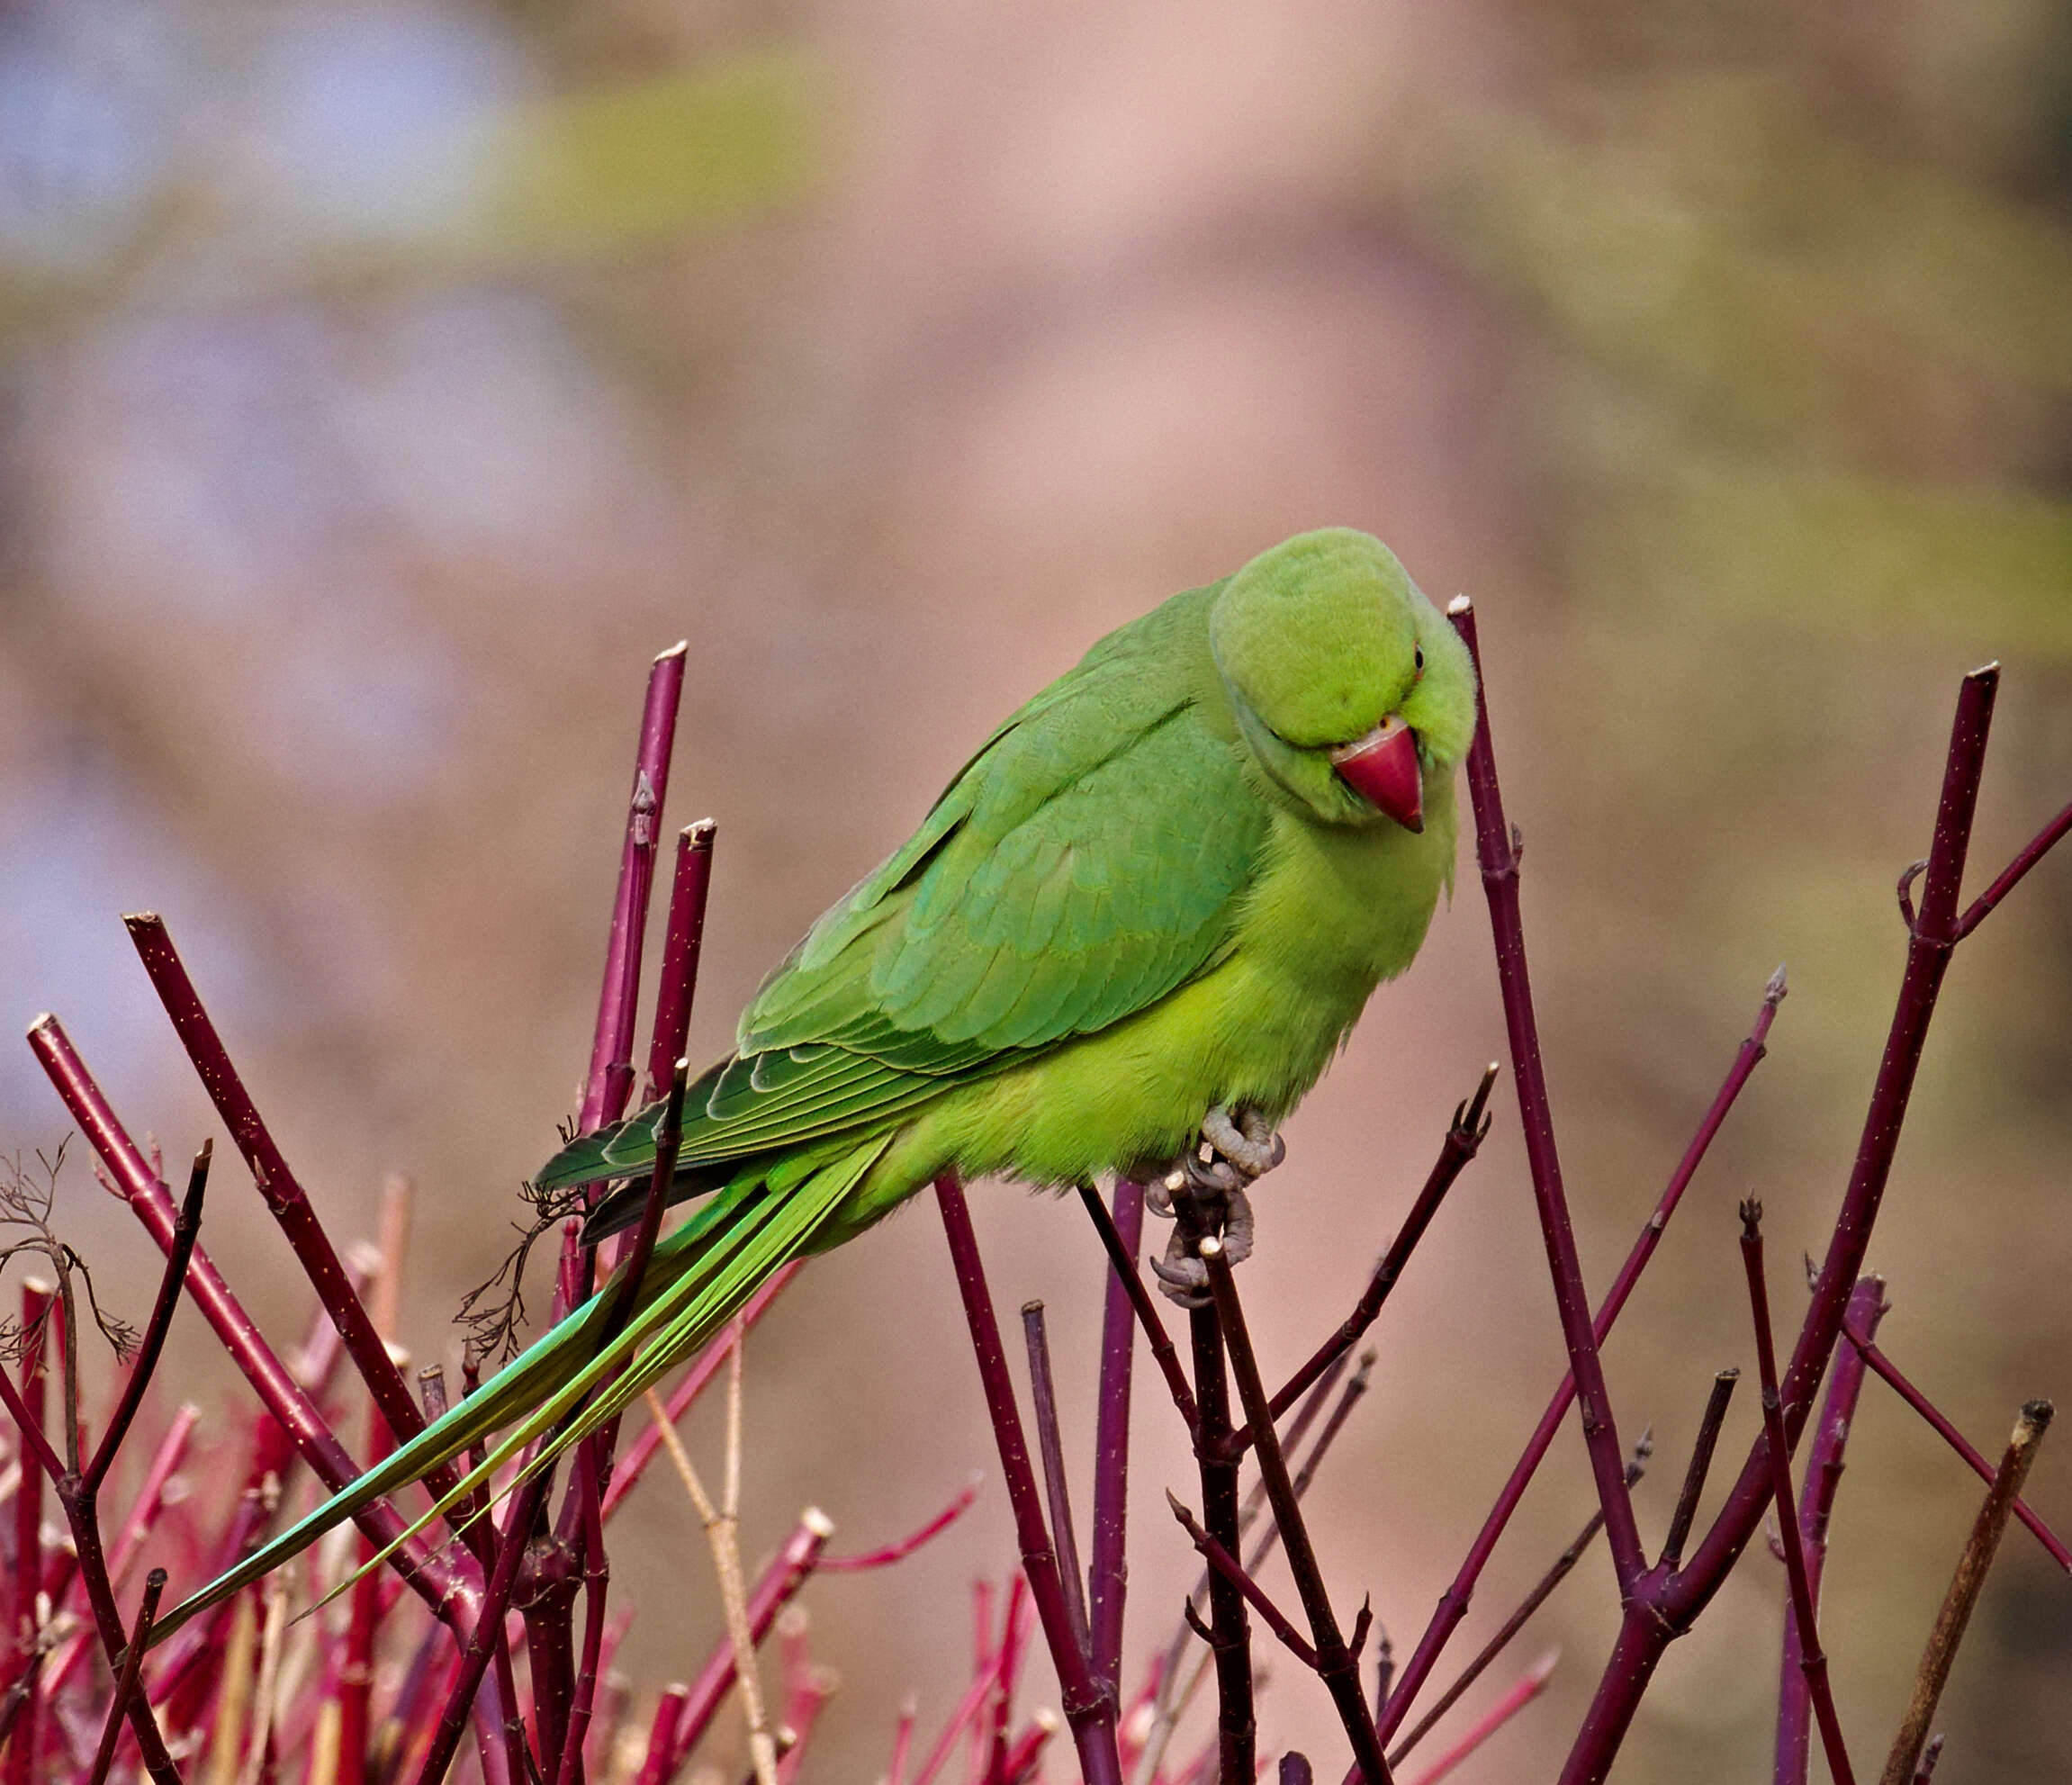 Image of Ring-necked Parakeet